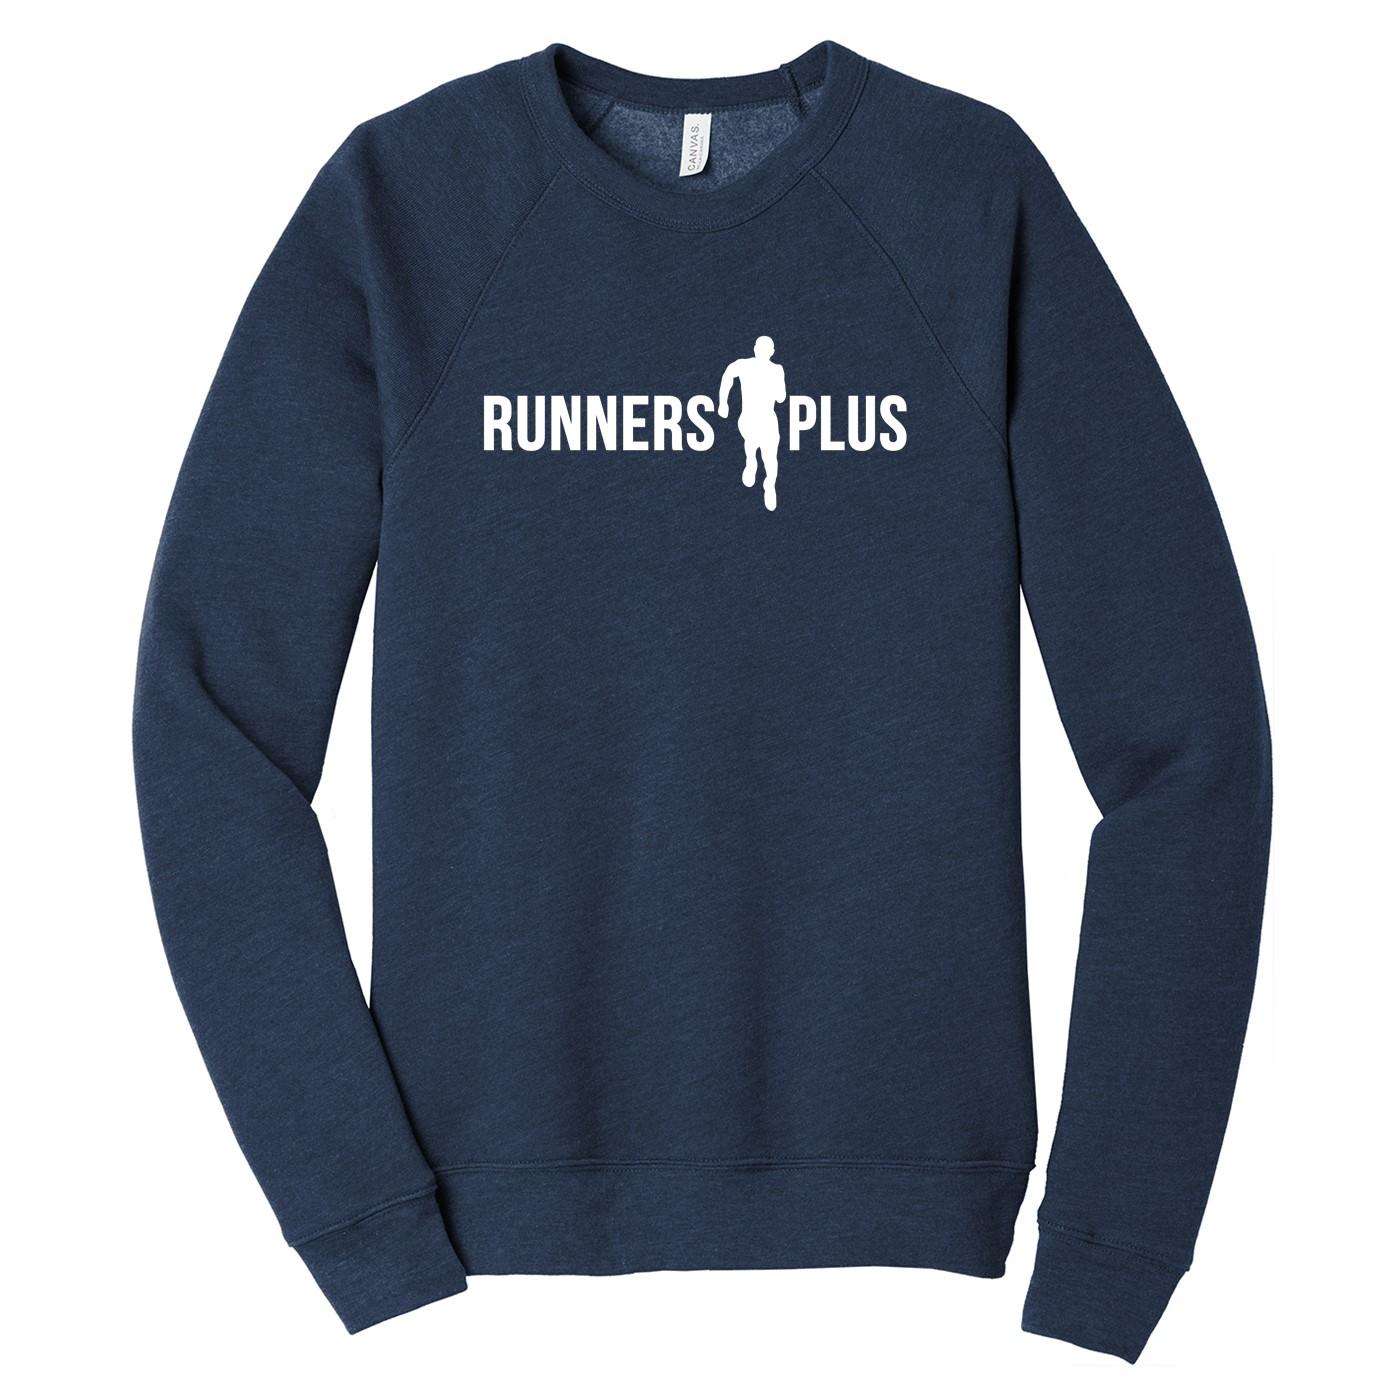  Lux Raglan Runners Plus Sweatshirt